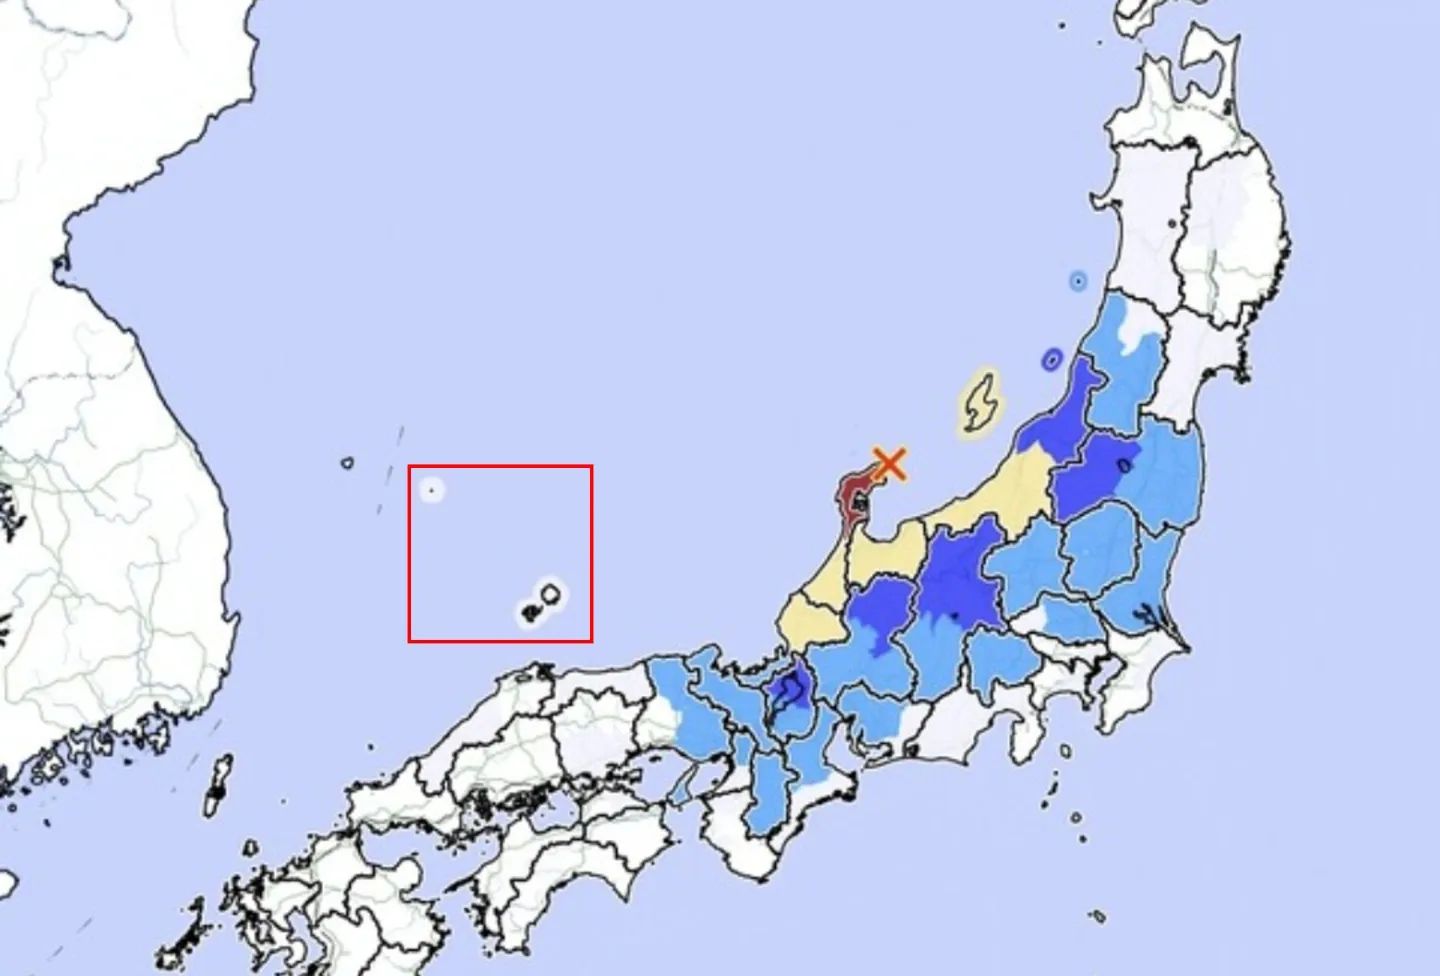 서경덕 교수가 캡처한 일본 기상청 지도 이미지.